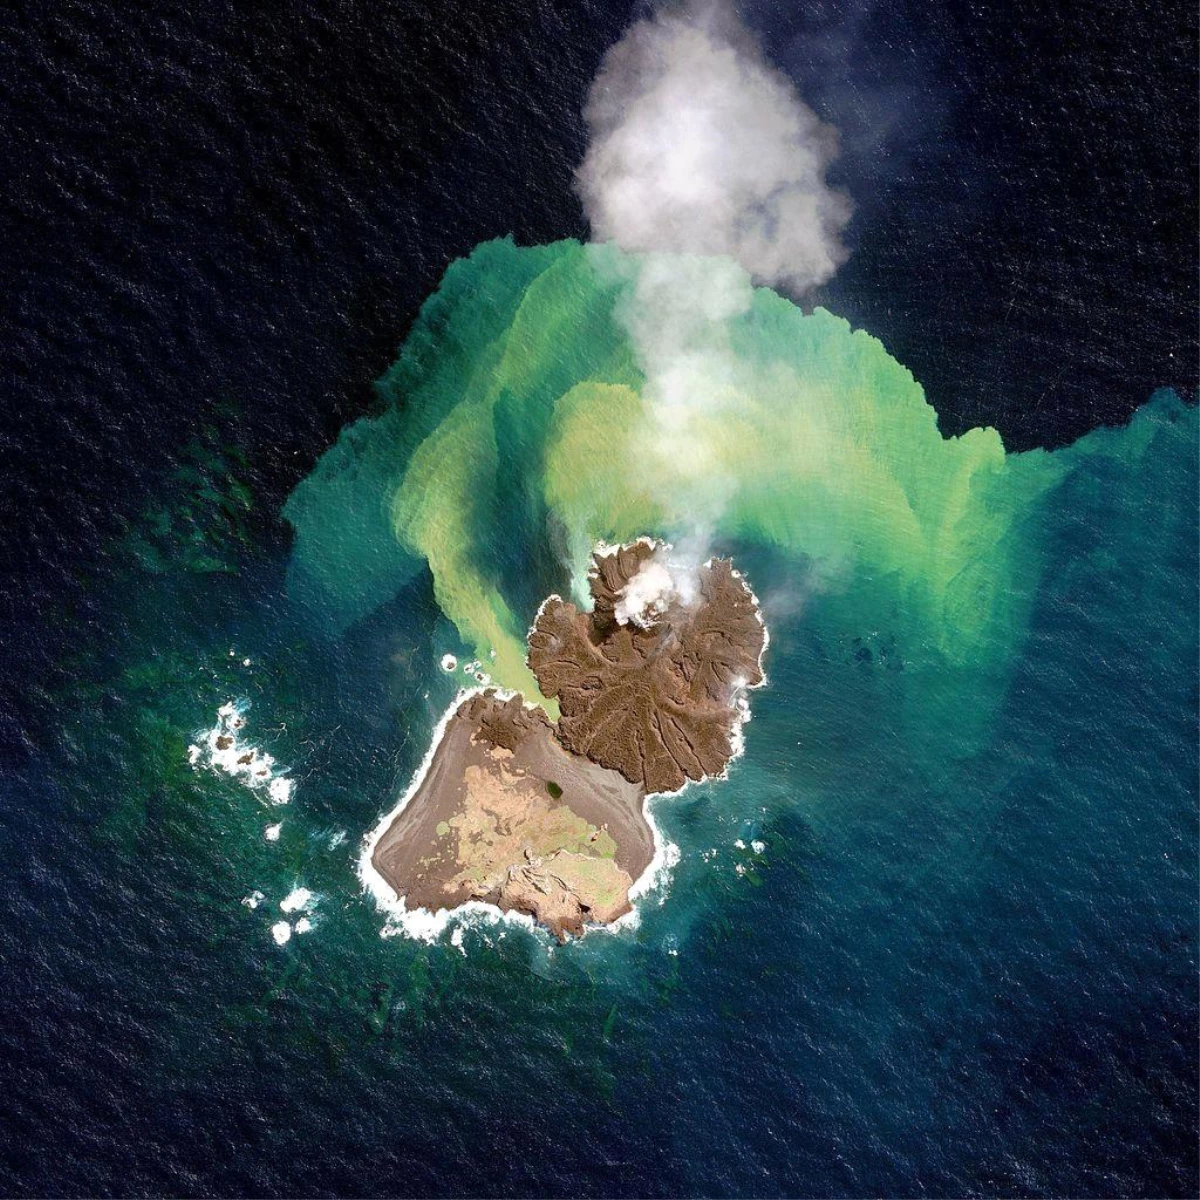 O ülkede deniz altı yanardağı patlamasıyla yeni ada oluştu